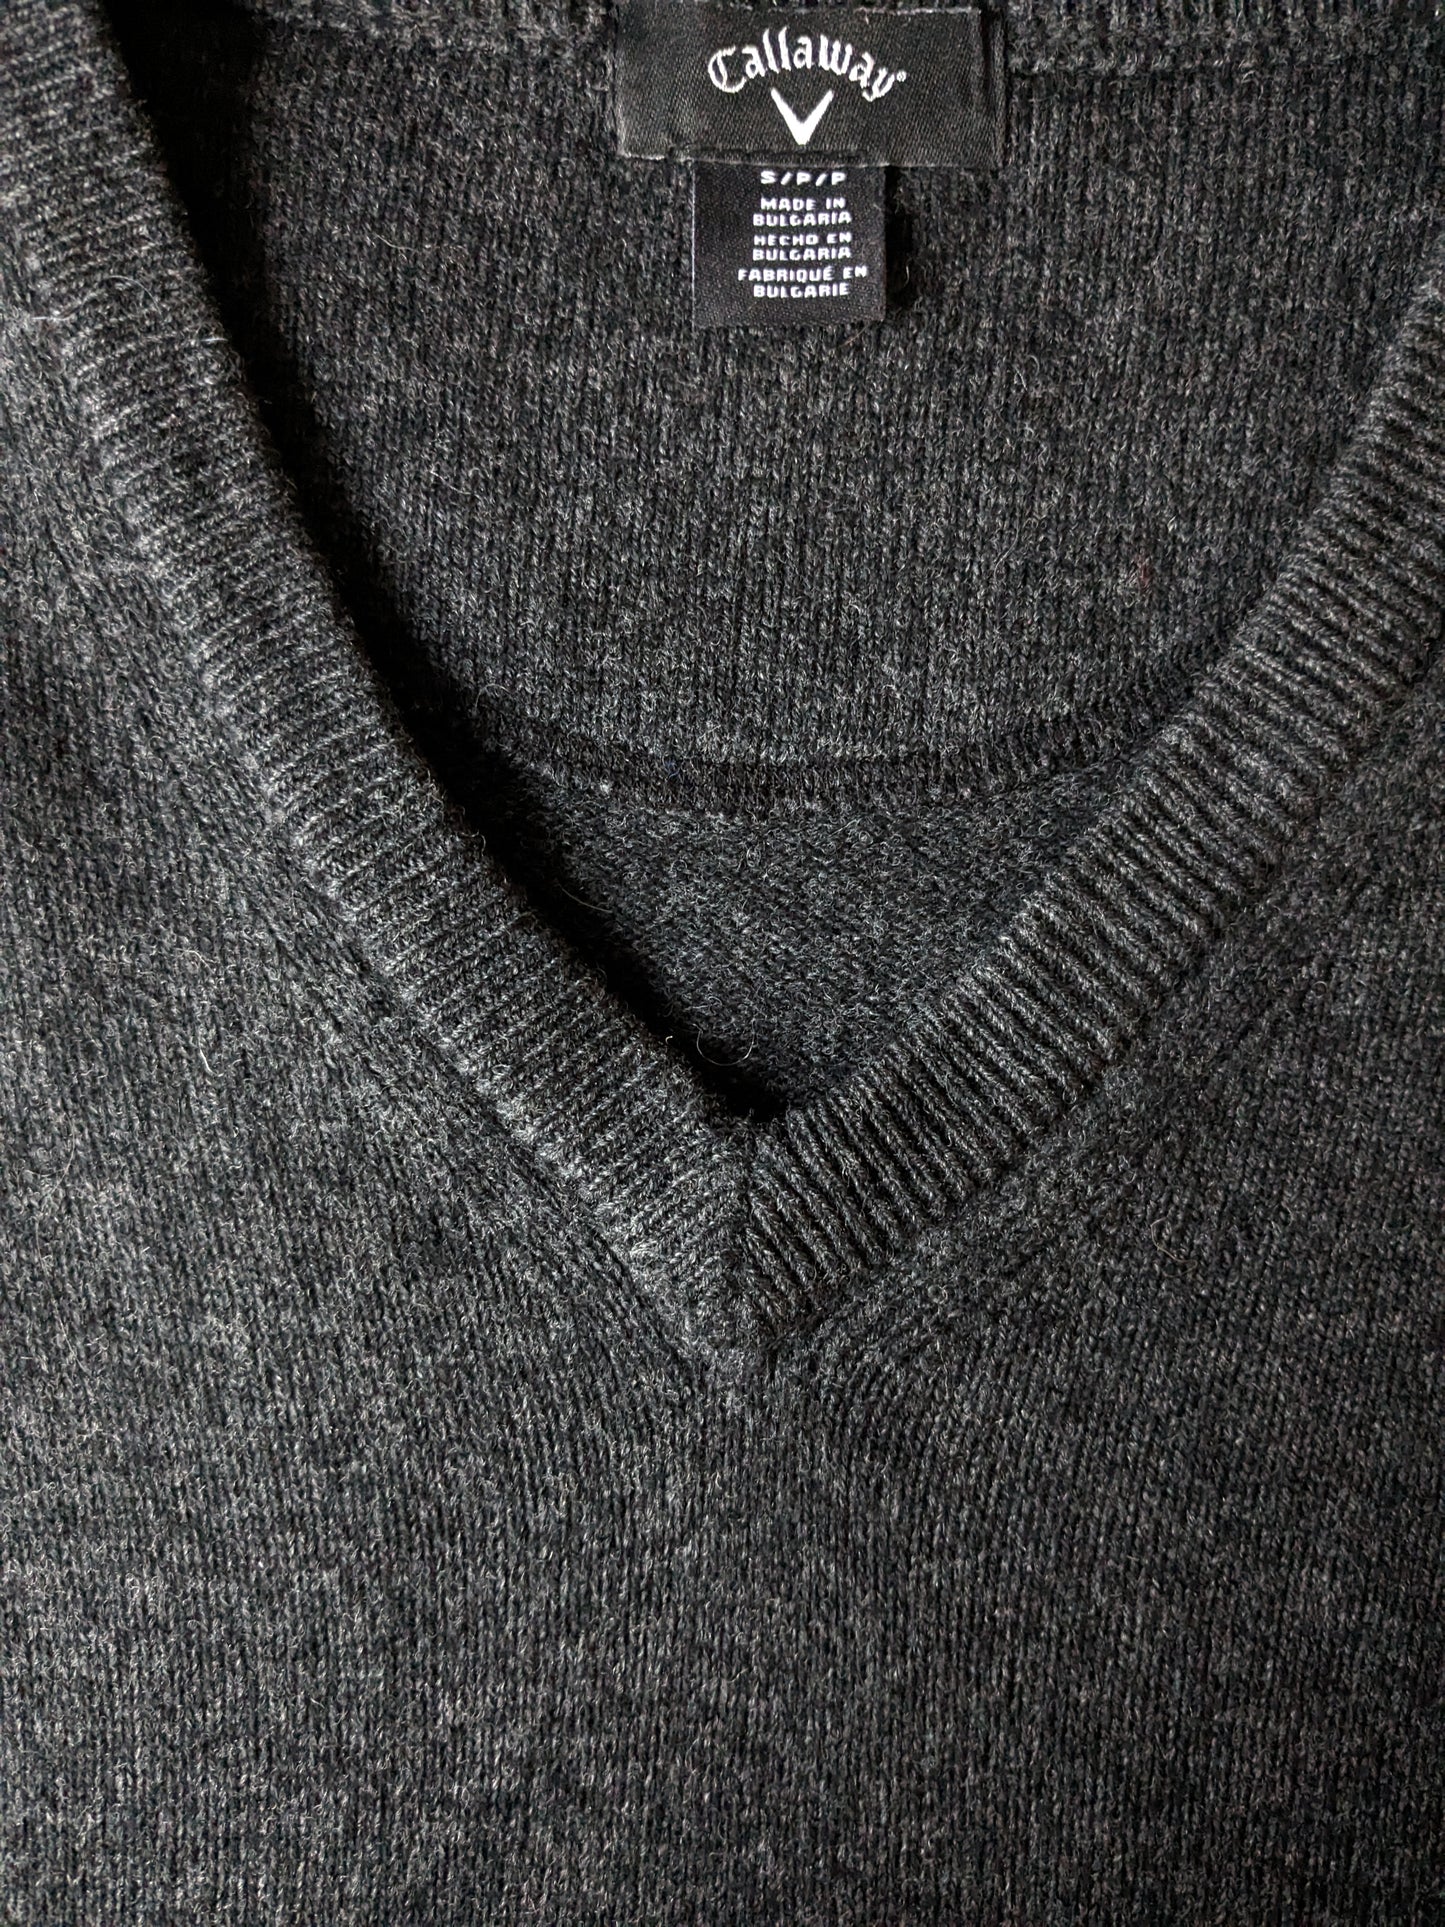 Callaway Woolen suéter con cuello en V. Gris oscuro mezclado. Tamaño S.